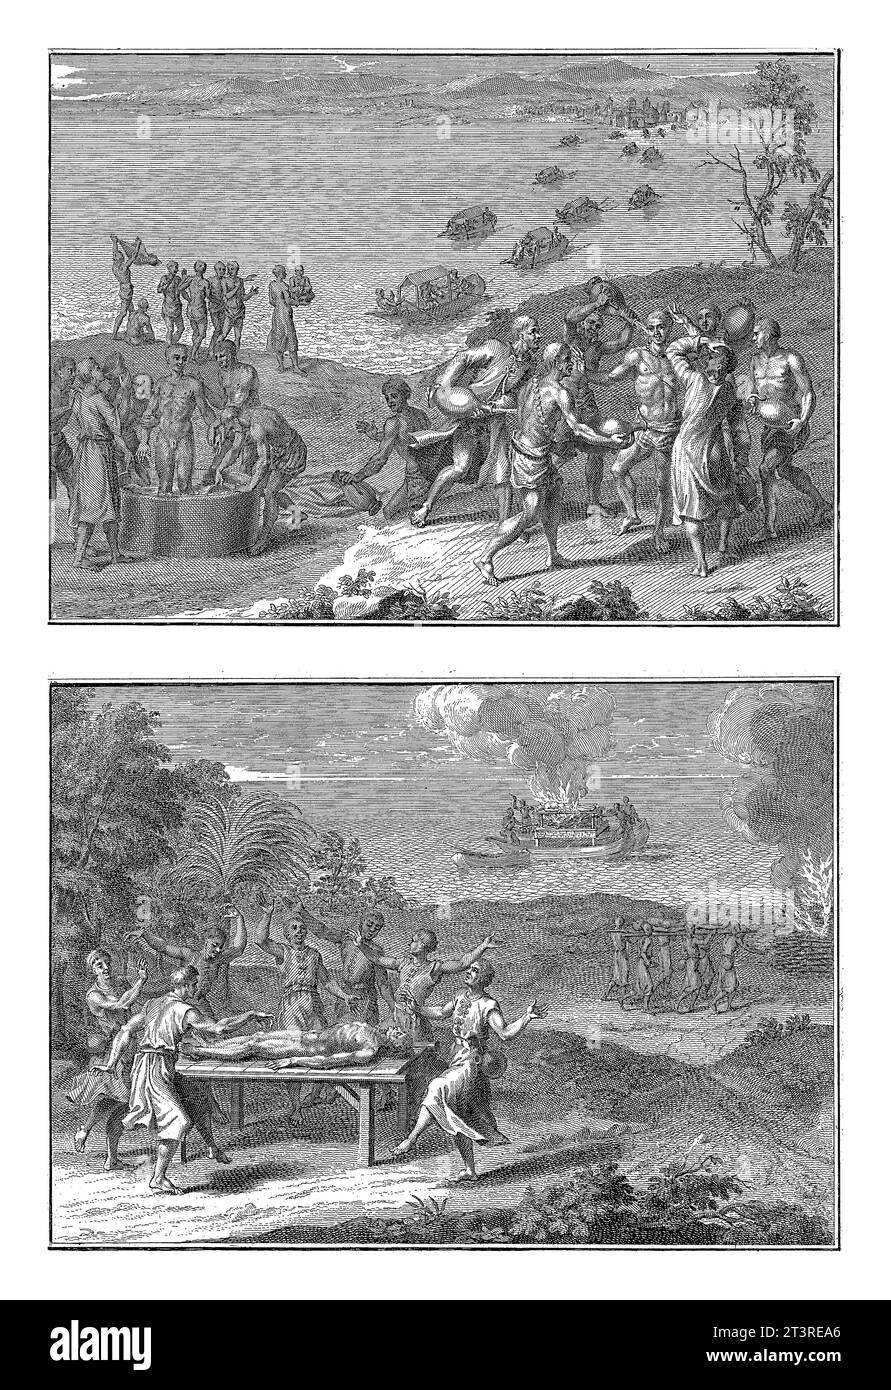 Darstellungen von Ritualen in Pegu, Bernard Picart (Werkstatt von), 1726 Blatt mit zwei Darstellungen von Ritualen aus Pegu. Stockfoto